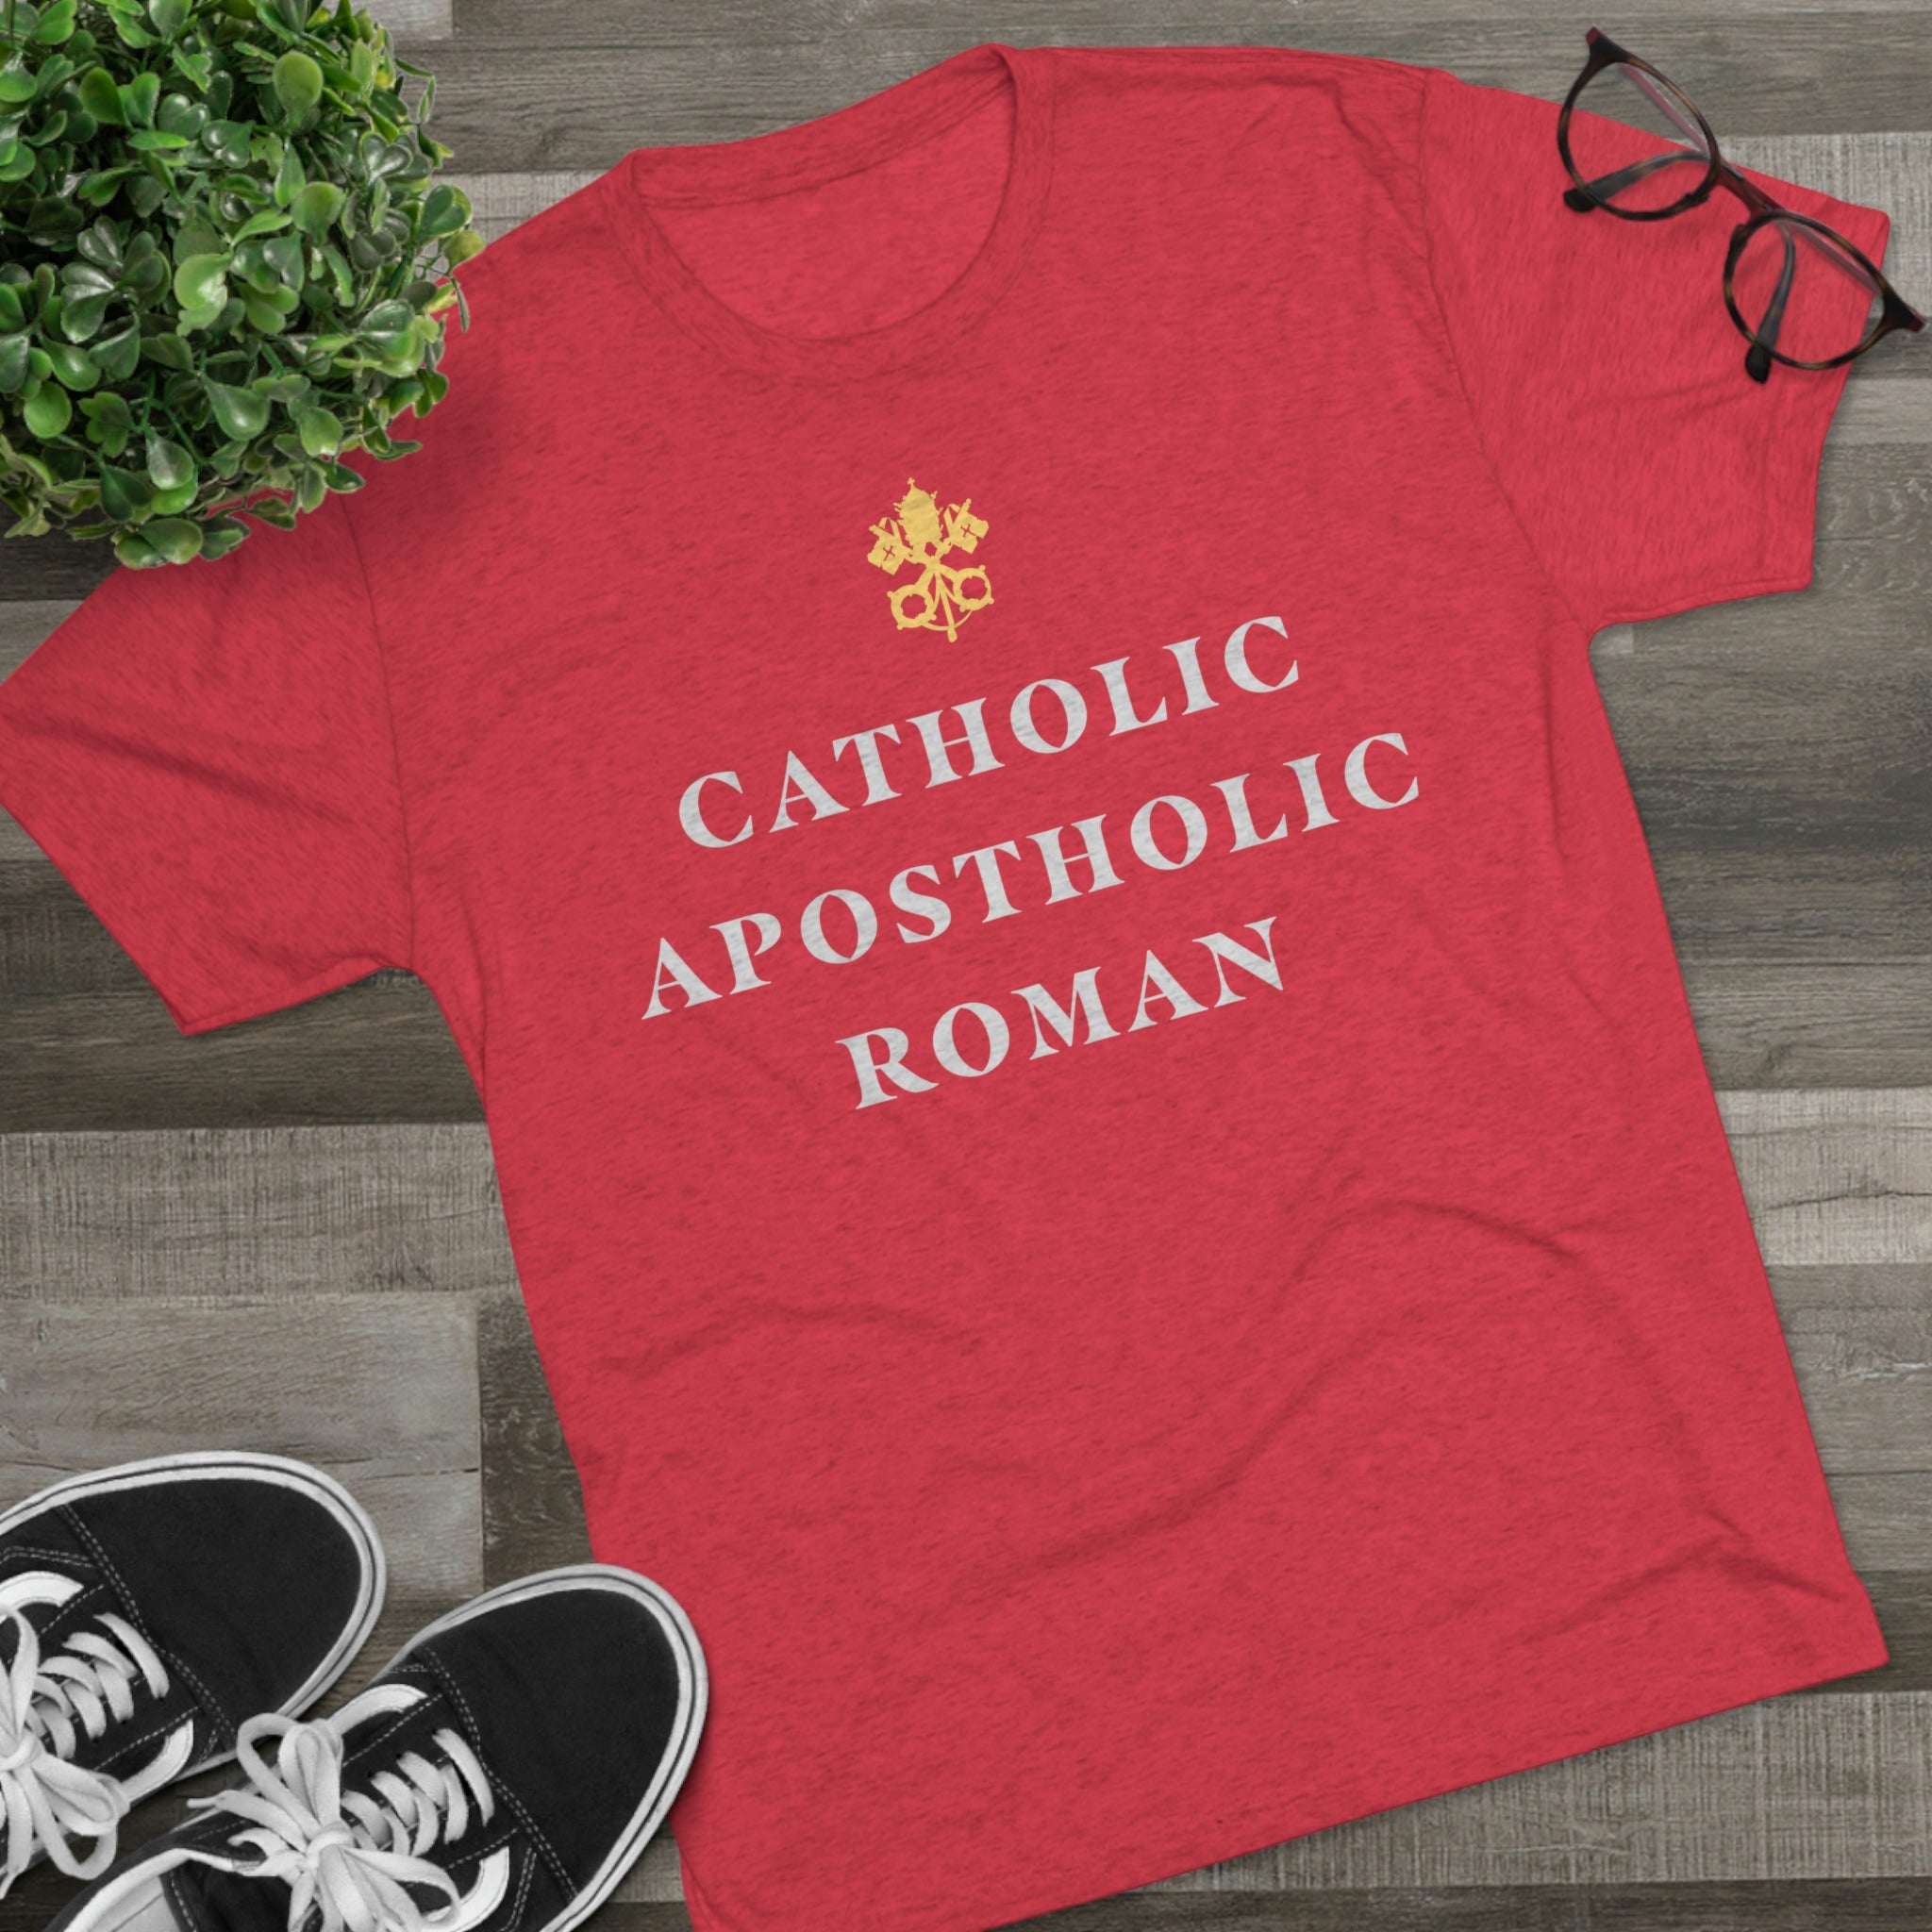 Men's Catholic Premium T-shirt